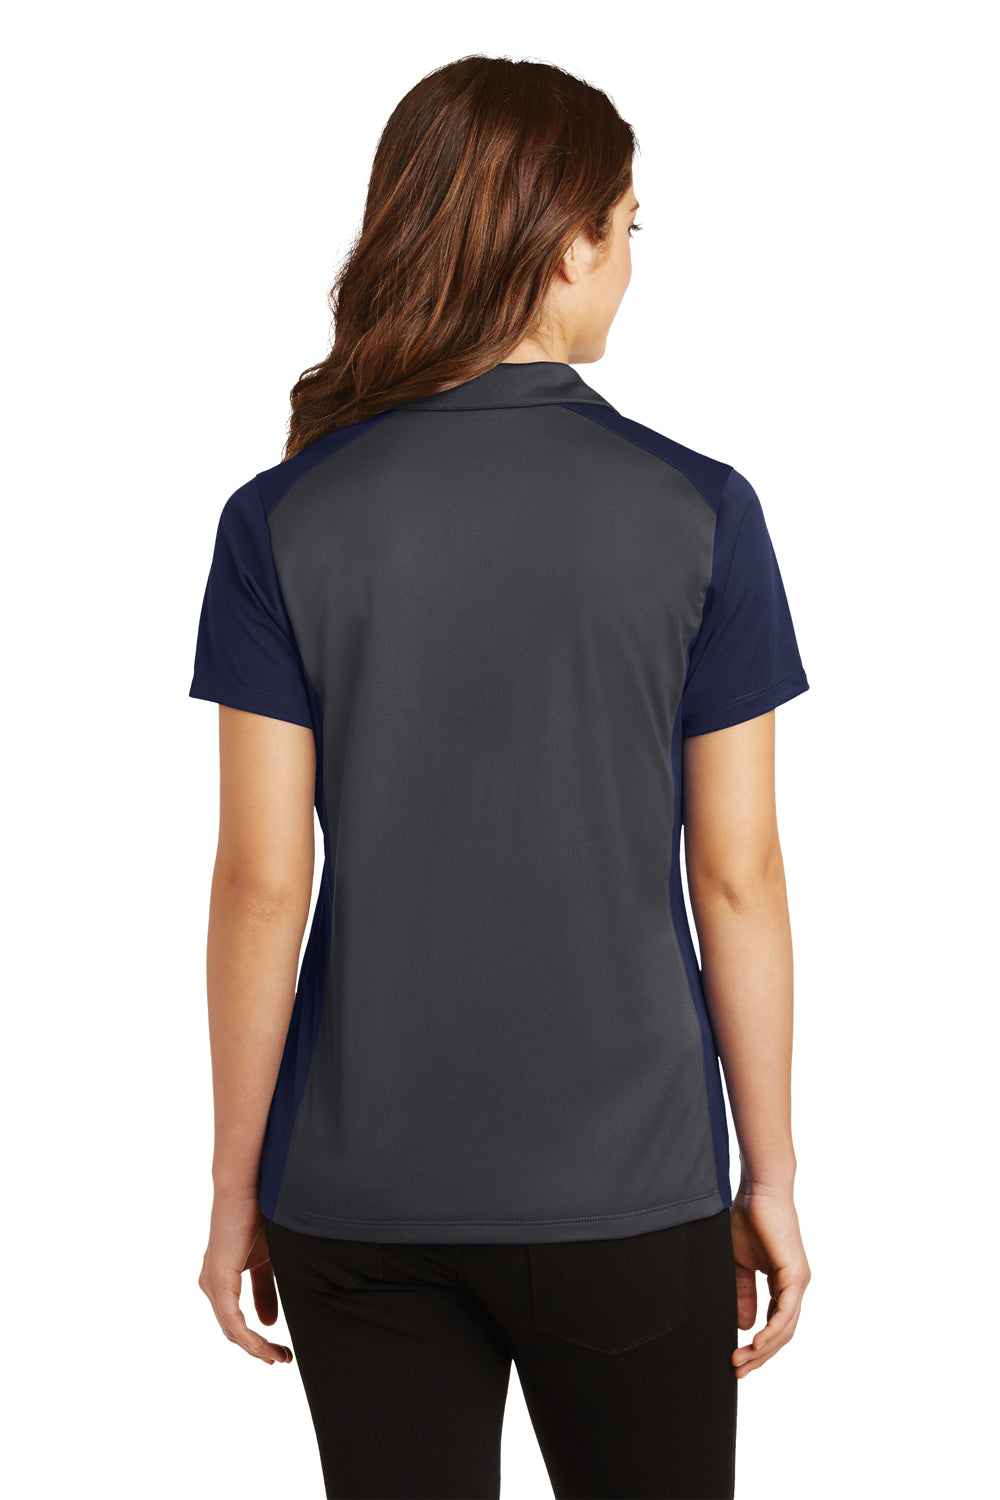 Sport-Tek LST652 Womens Sport-Wick Moisture Wicking Short Sleeve Polo Shirt Iron Grey/Navy Blue Back